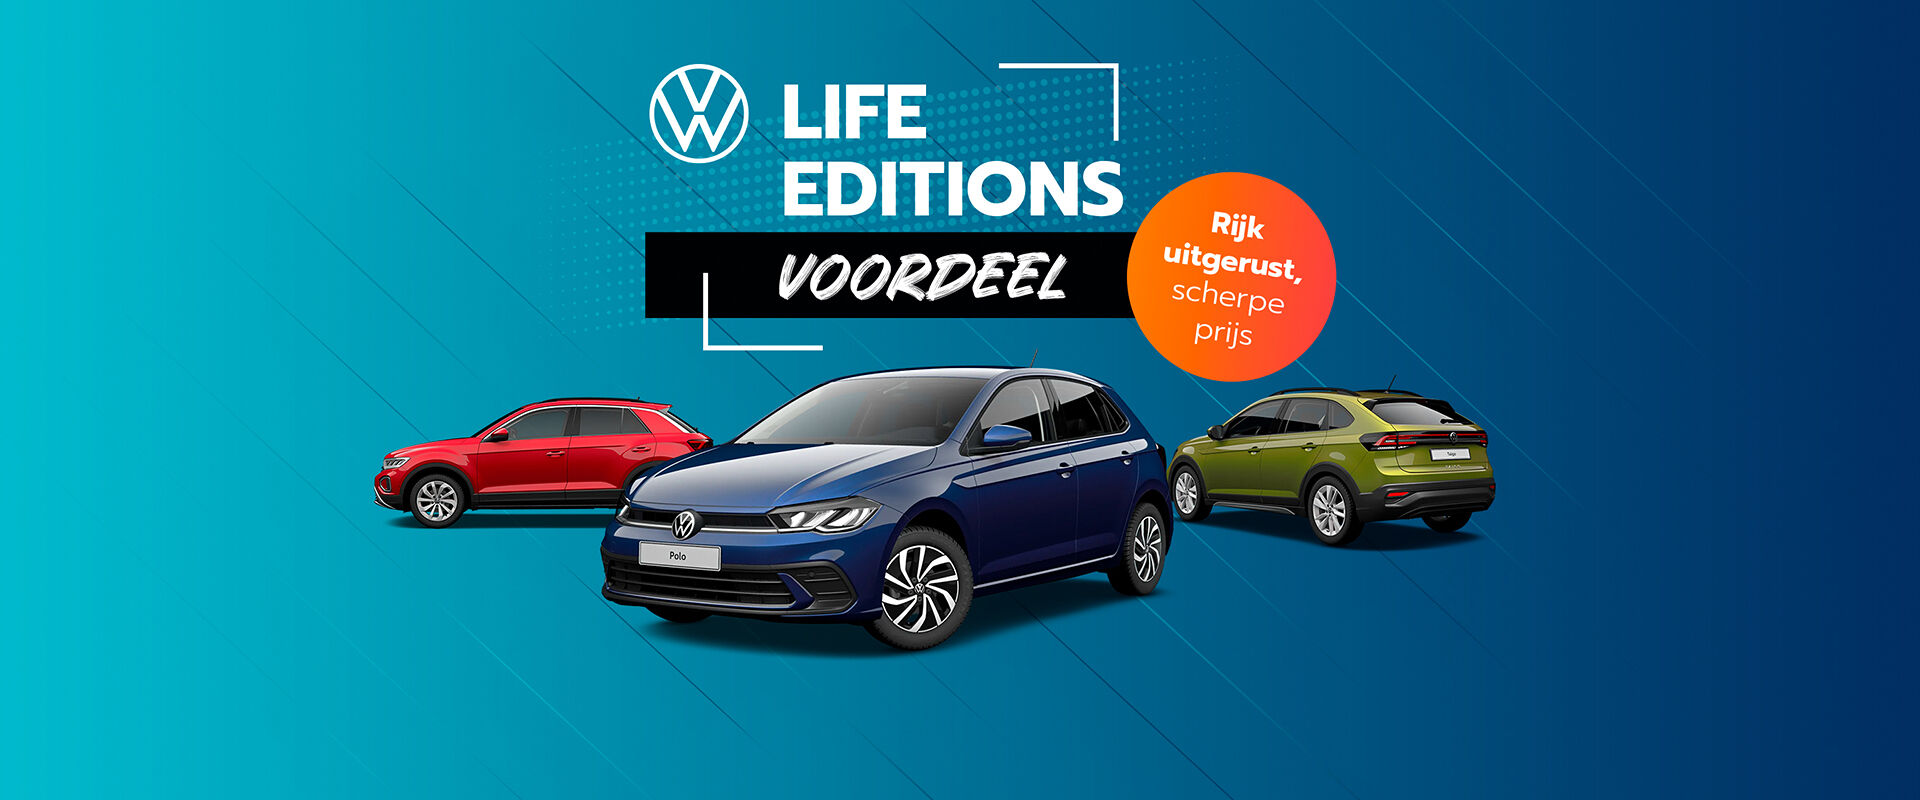 volkswagen-life-editions-header